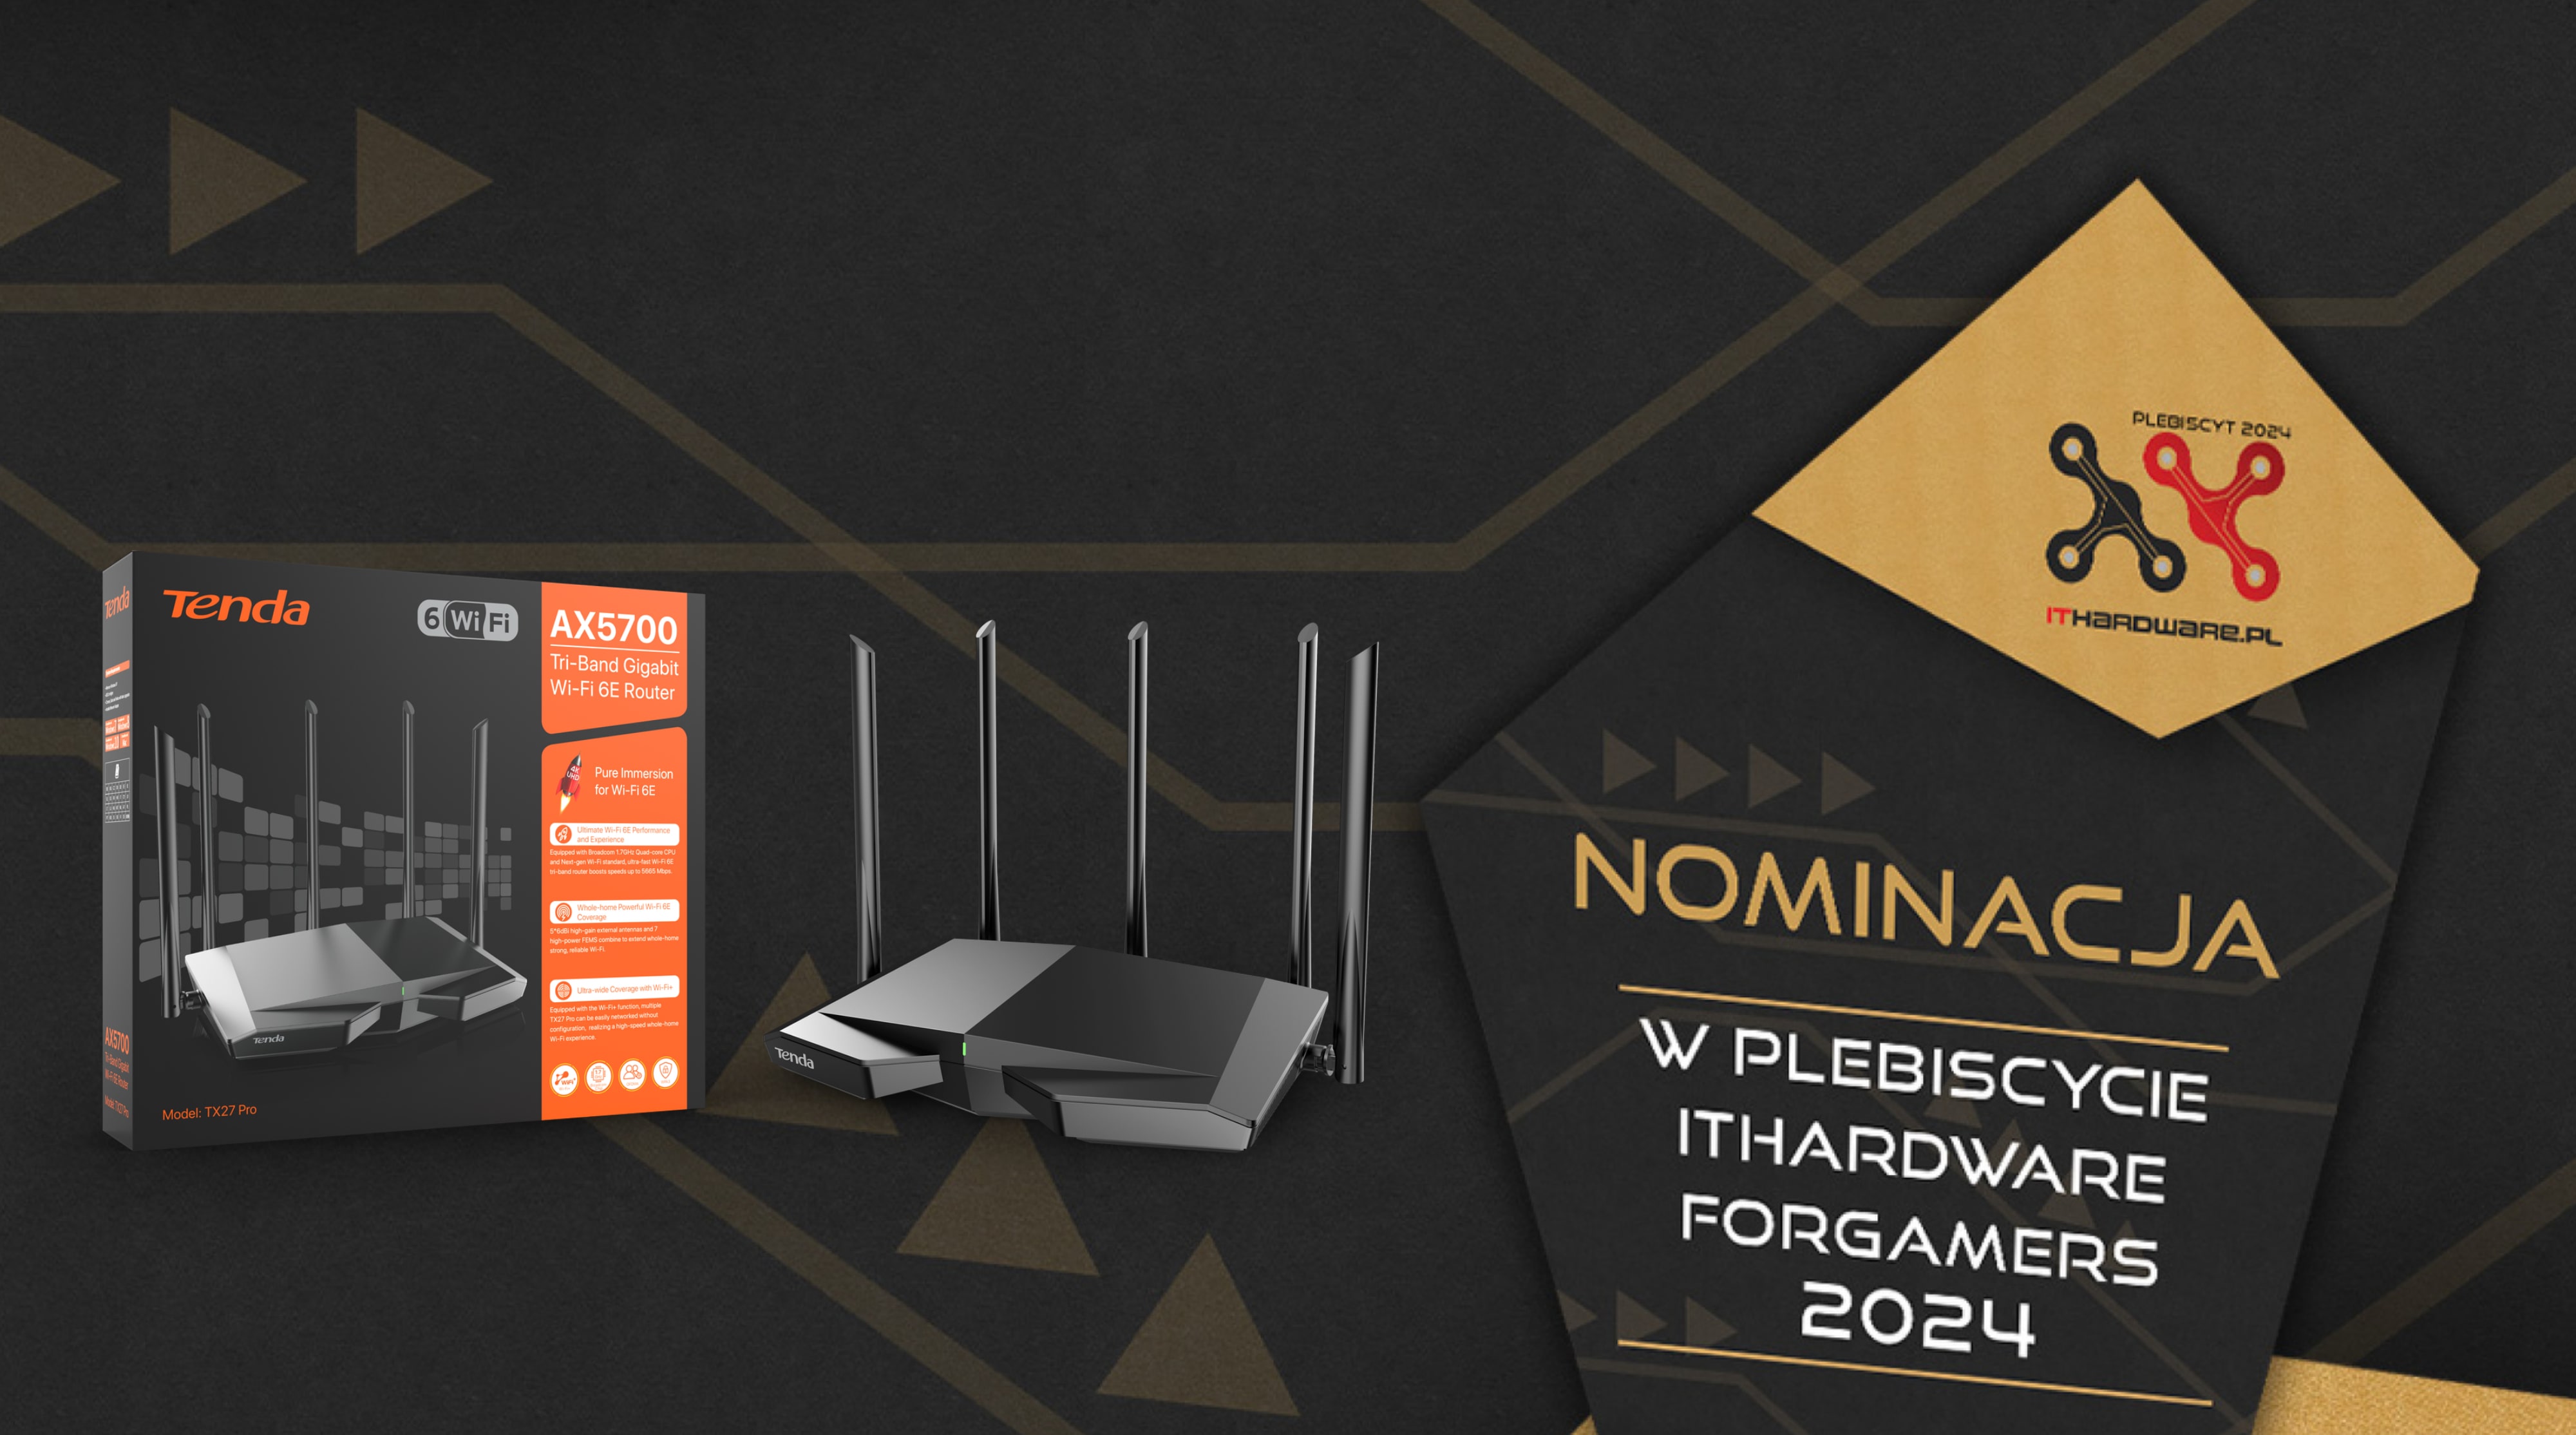 Tenda TX27 Pro nominacja w plebiscyscie ITHardware For Gamers 2024 kategoria routery